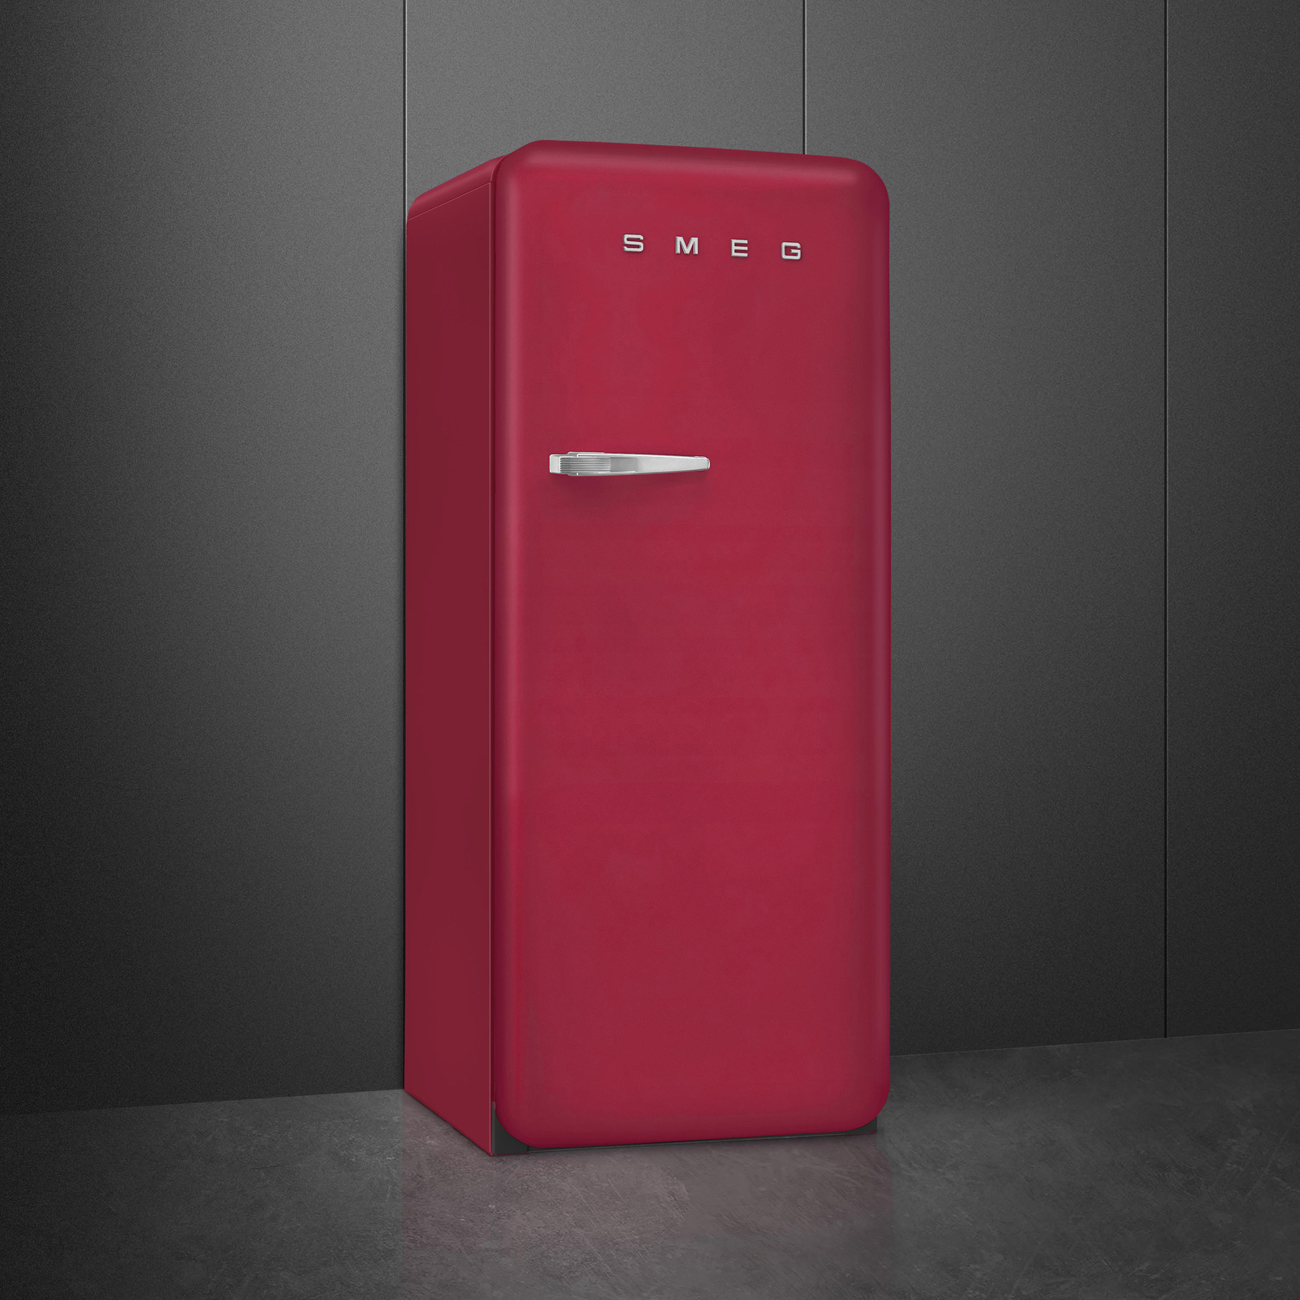 Ruby Red refrigerator - Smeg_4